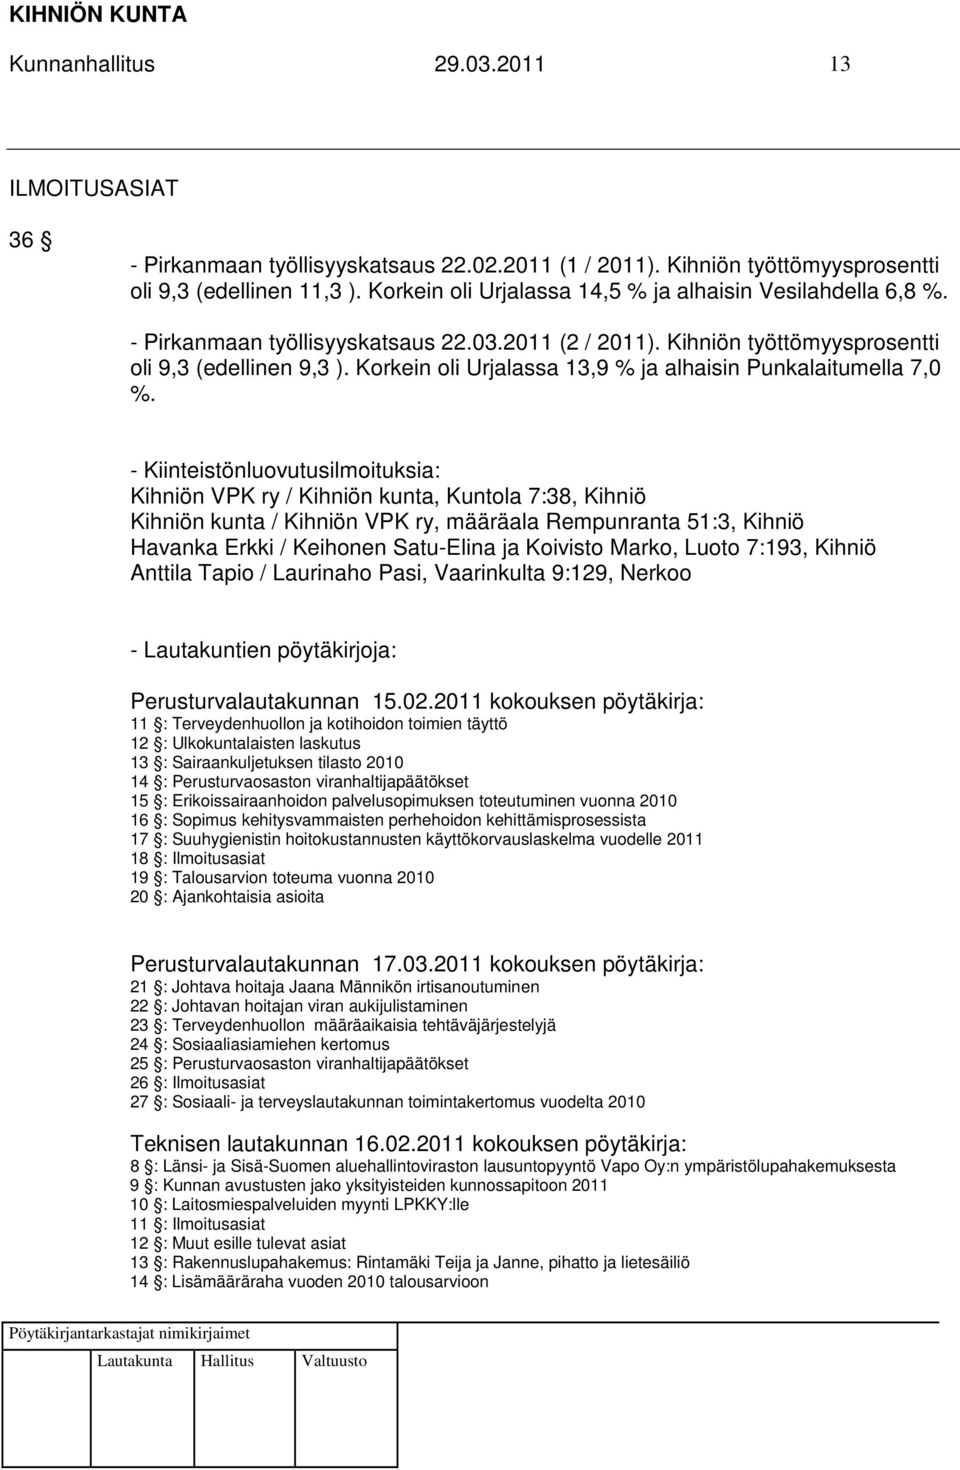 Korkein oli Urjalassa 13,9 % ja alhaisin Punkalaitumella 7,0 %.